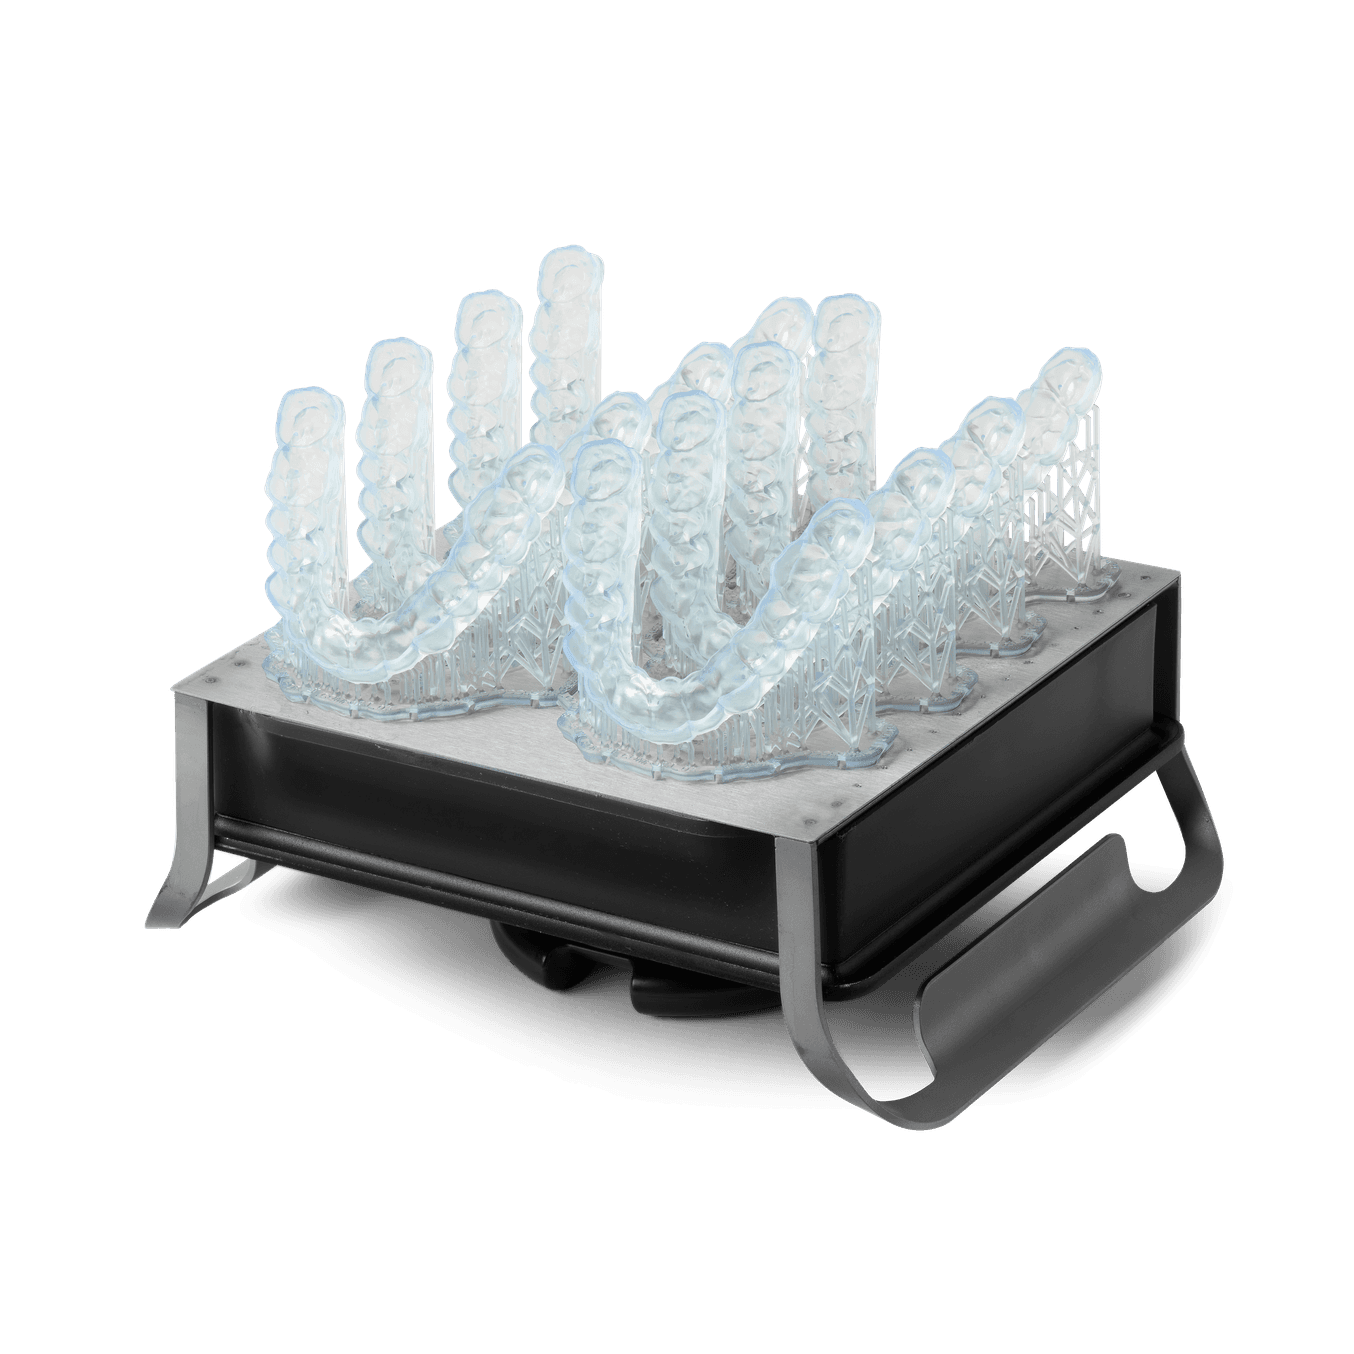 Bite occlusali flessibili finiti stampati in 3D in Dental LT Comfort Resin su modello diagnostico.